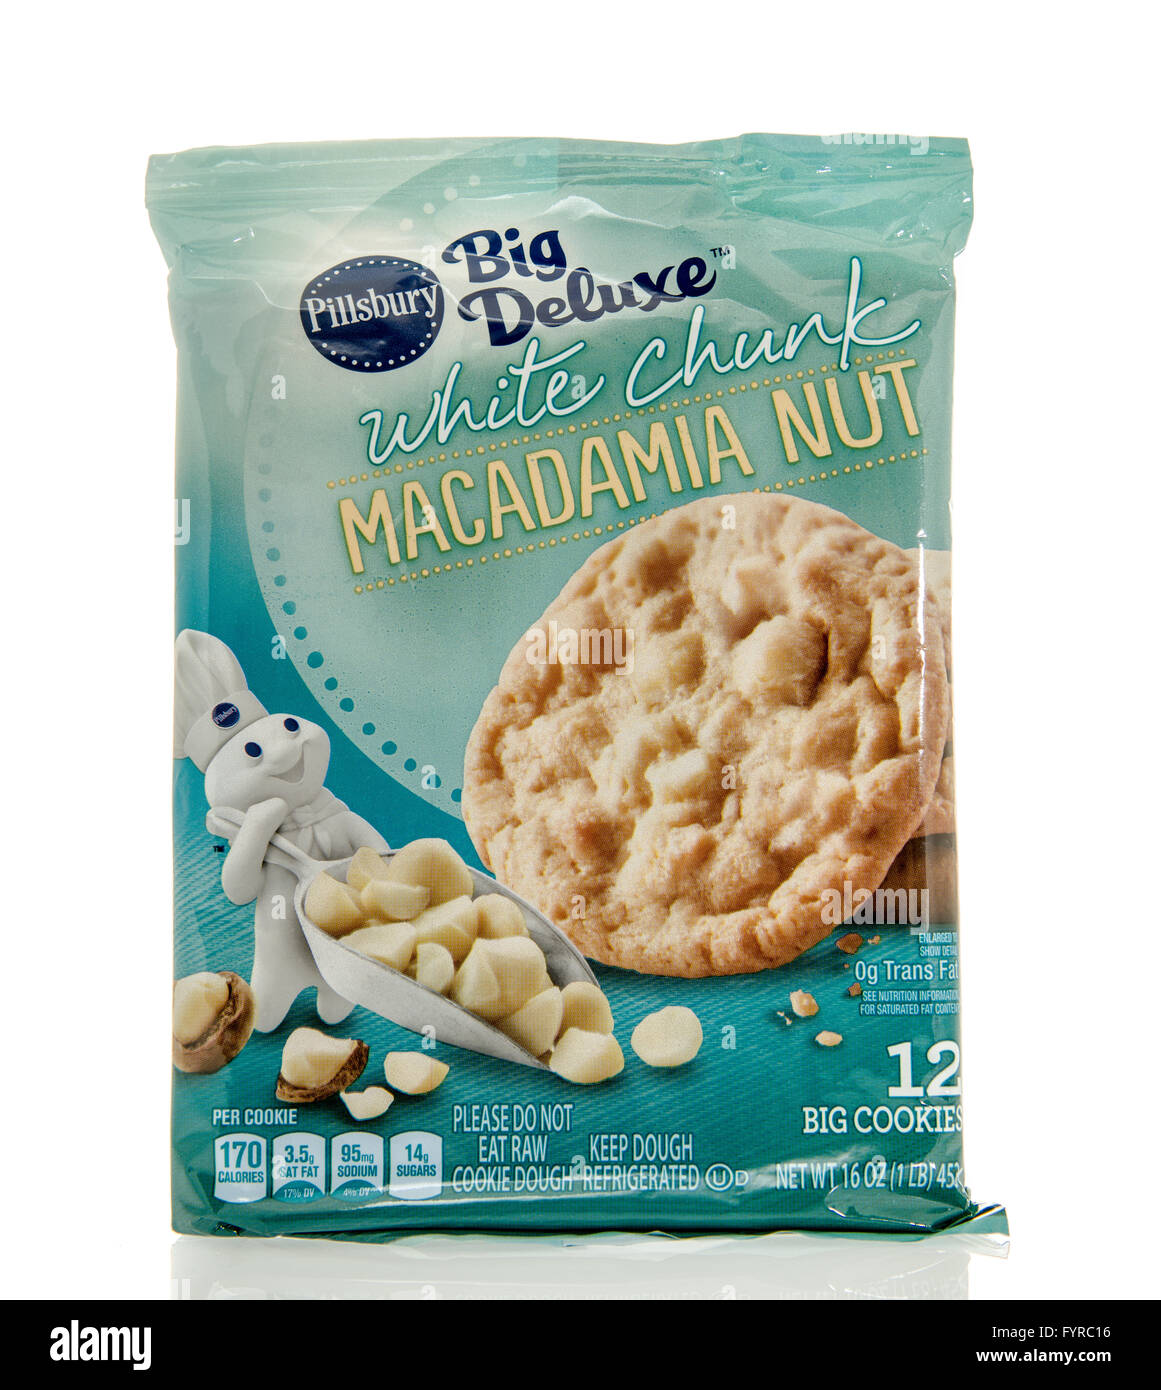 Winneconne, WI - 7 déc 2016 : Paquet de pâte à biscuit Pillsbury en blanc chunk macadamia saveur. Banque D'Images